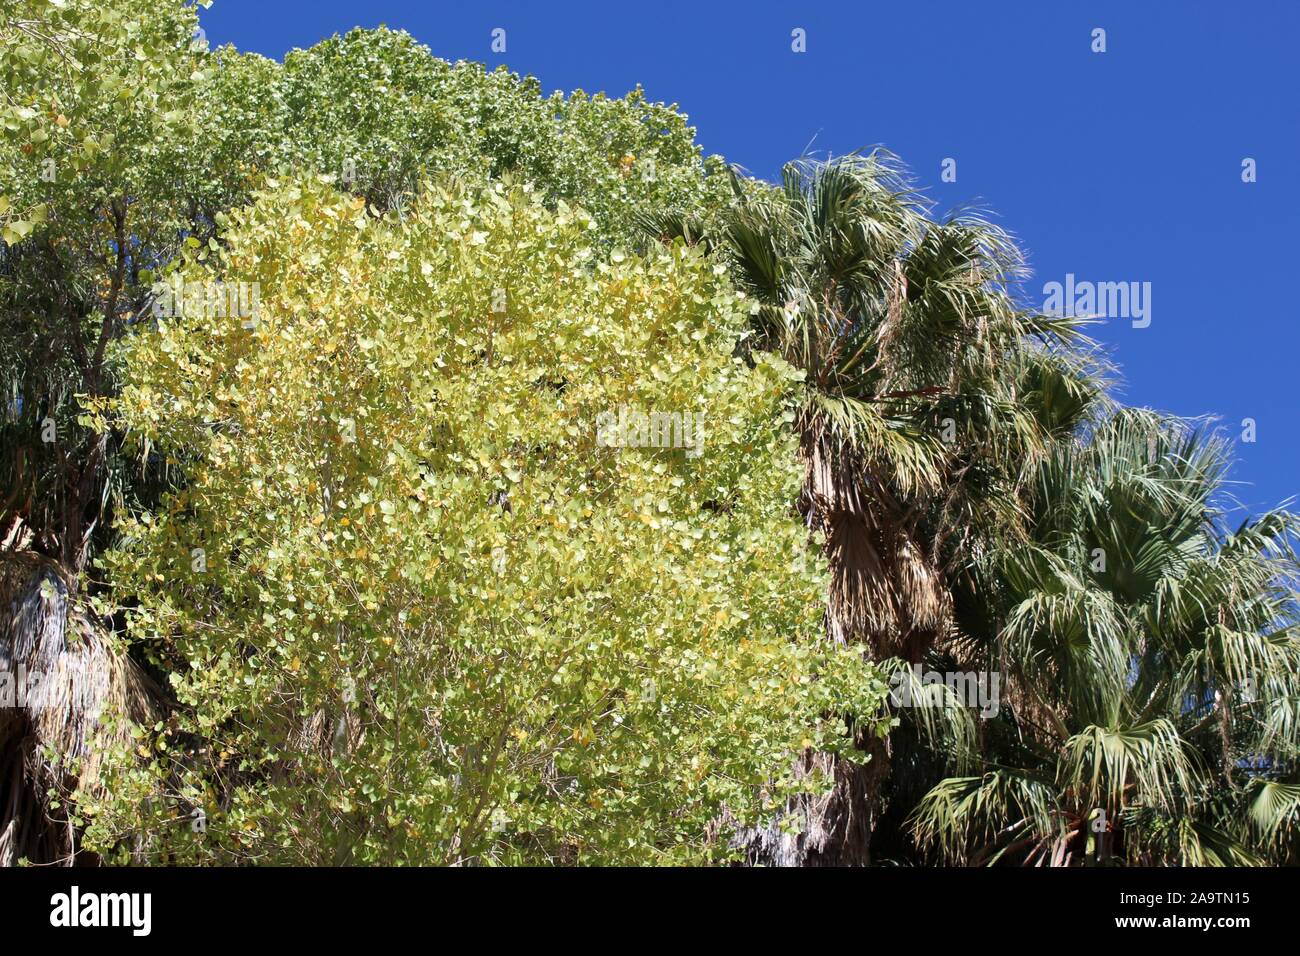 Arbre indigène au printemps Cottonwood de Joshua Tree National Park dans le désert du Colorado, botaniquement Populus fremontii, communément Fremonts peuplier deltoïde. Banque D'Images